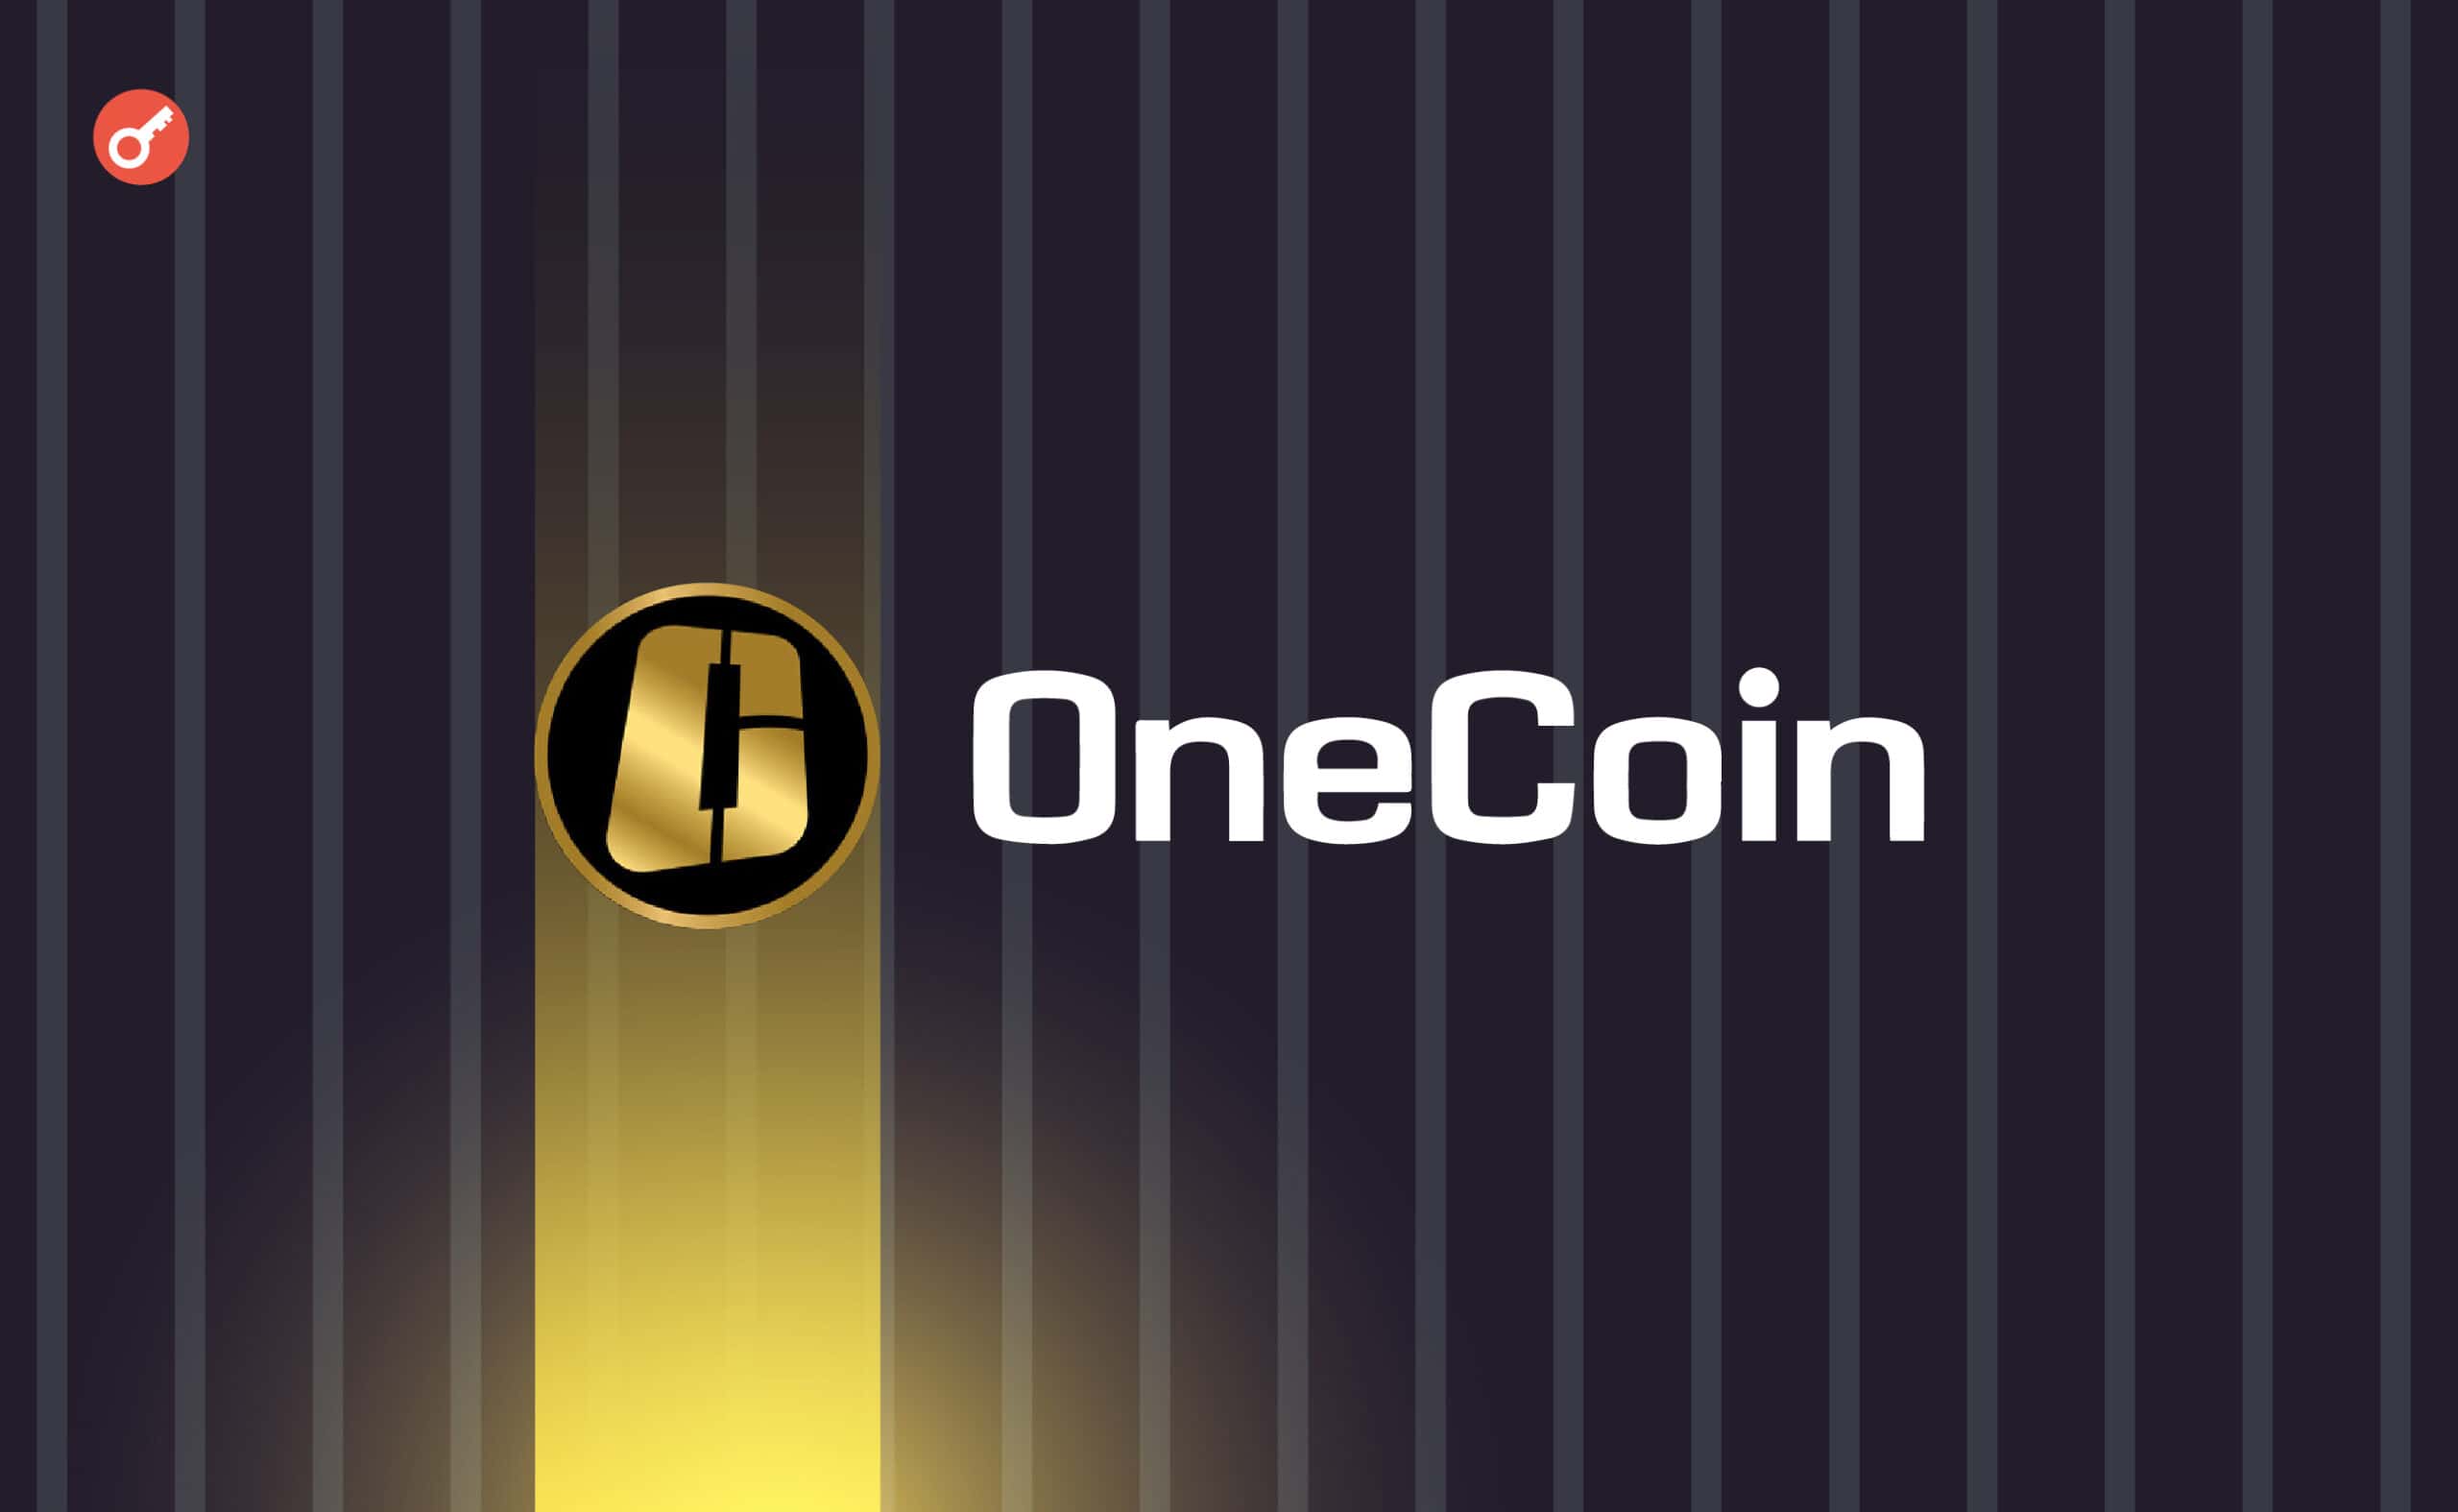 Співзасновника схеми OneCoin засудили до 20 років позбавлення волі. Головний колаж новини.